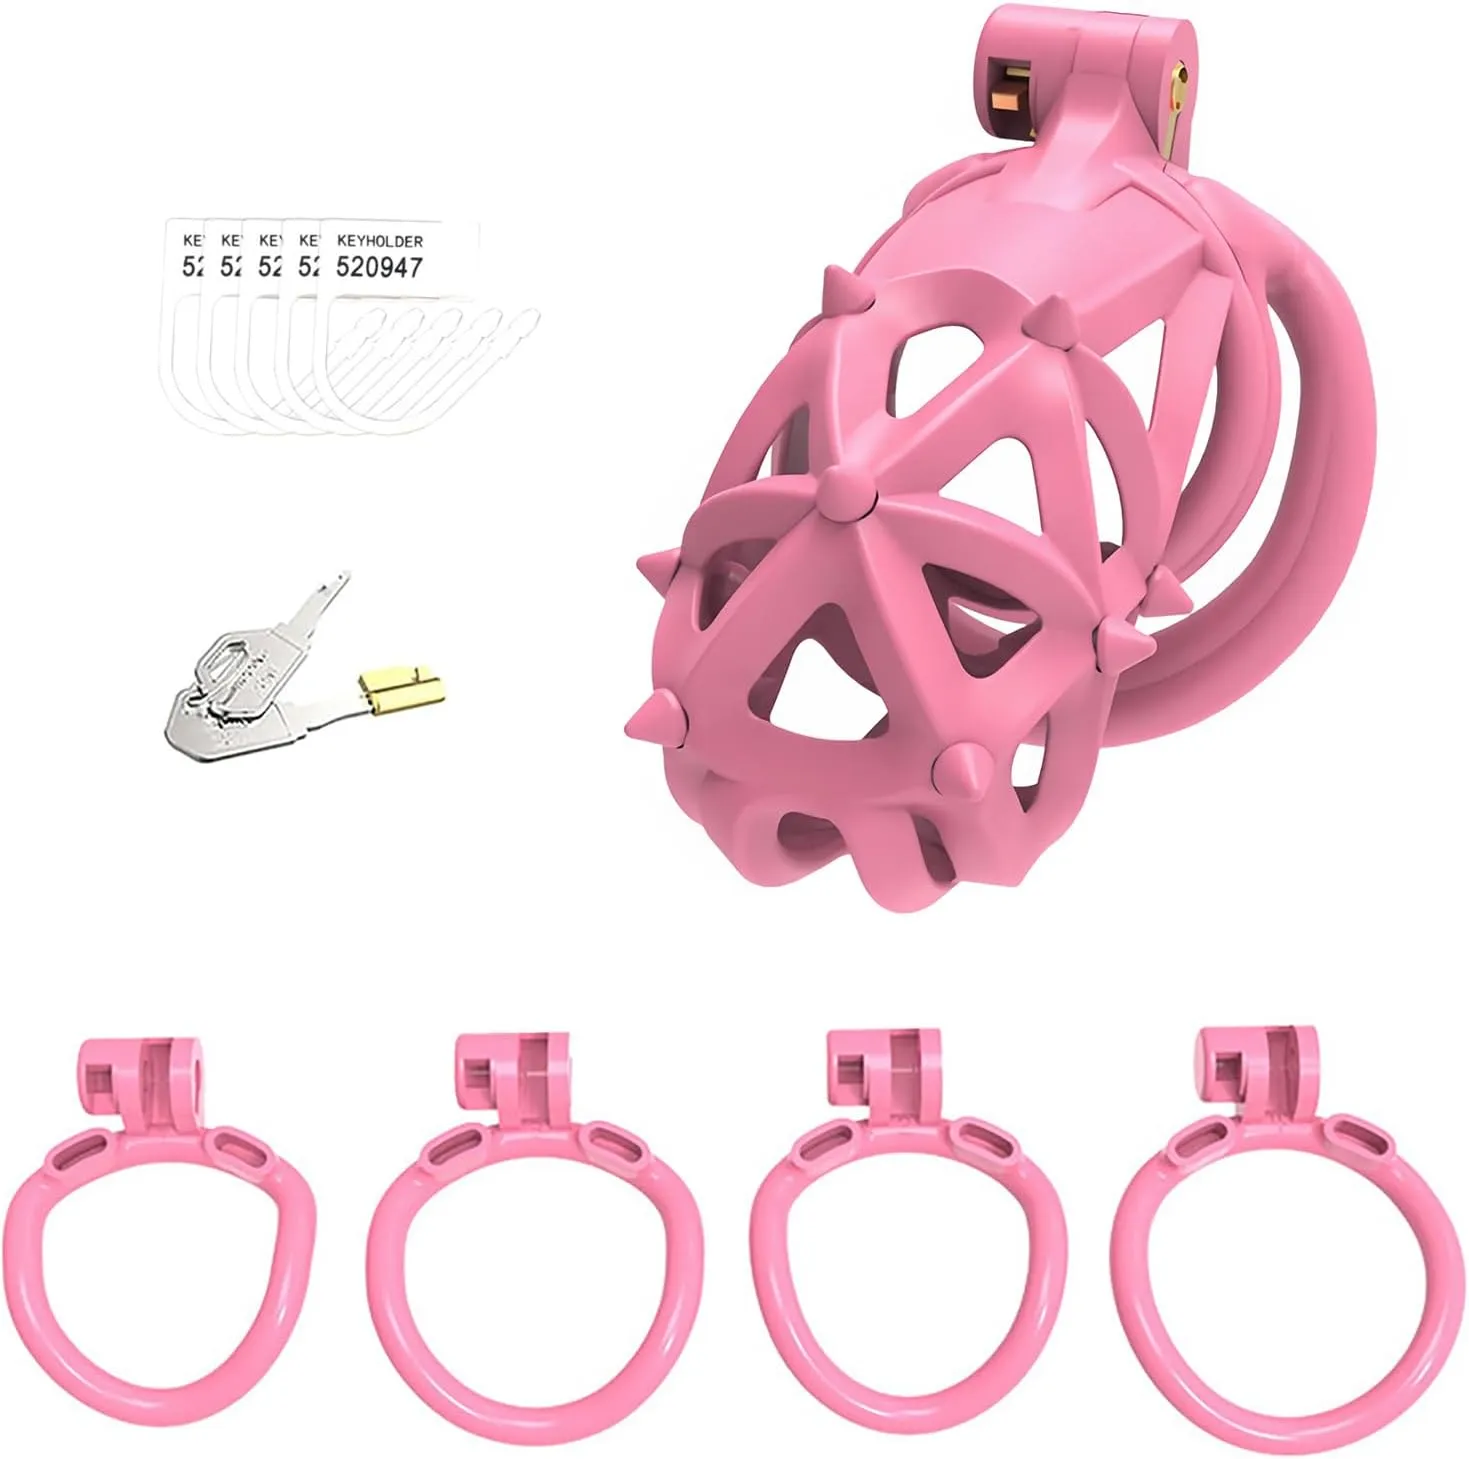 4 개의 수탉 고리와 더블 엔드 소프트 스파이크 3D 프린트 레진 음경 잠금 성인 섹스 토이 BDSM 트레이너 장치 (장거리 링, 핑크)